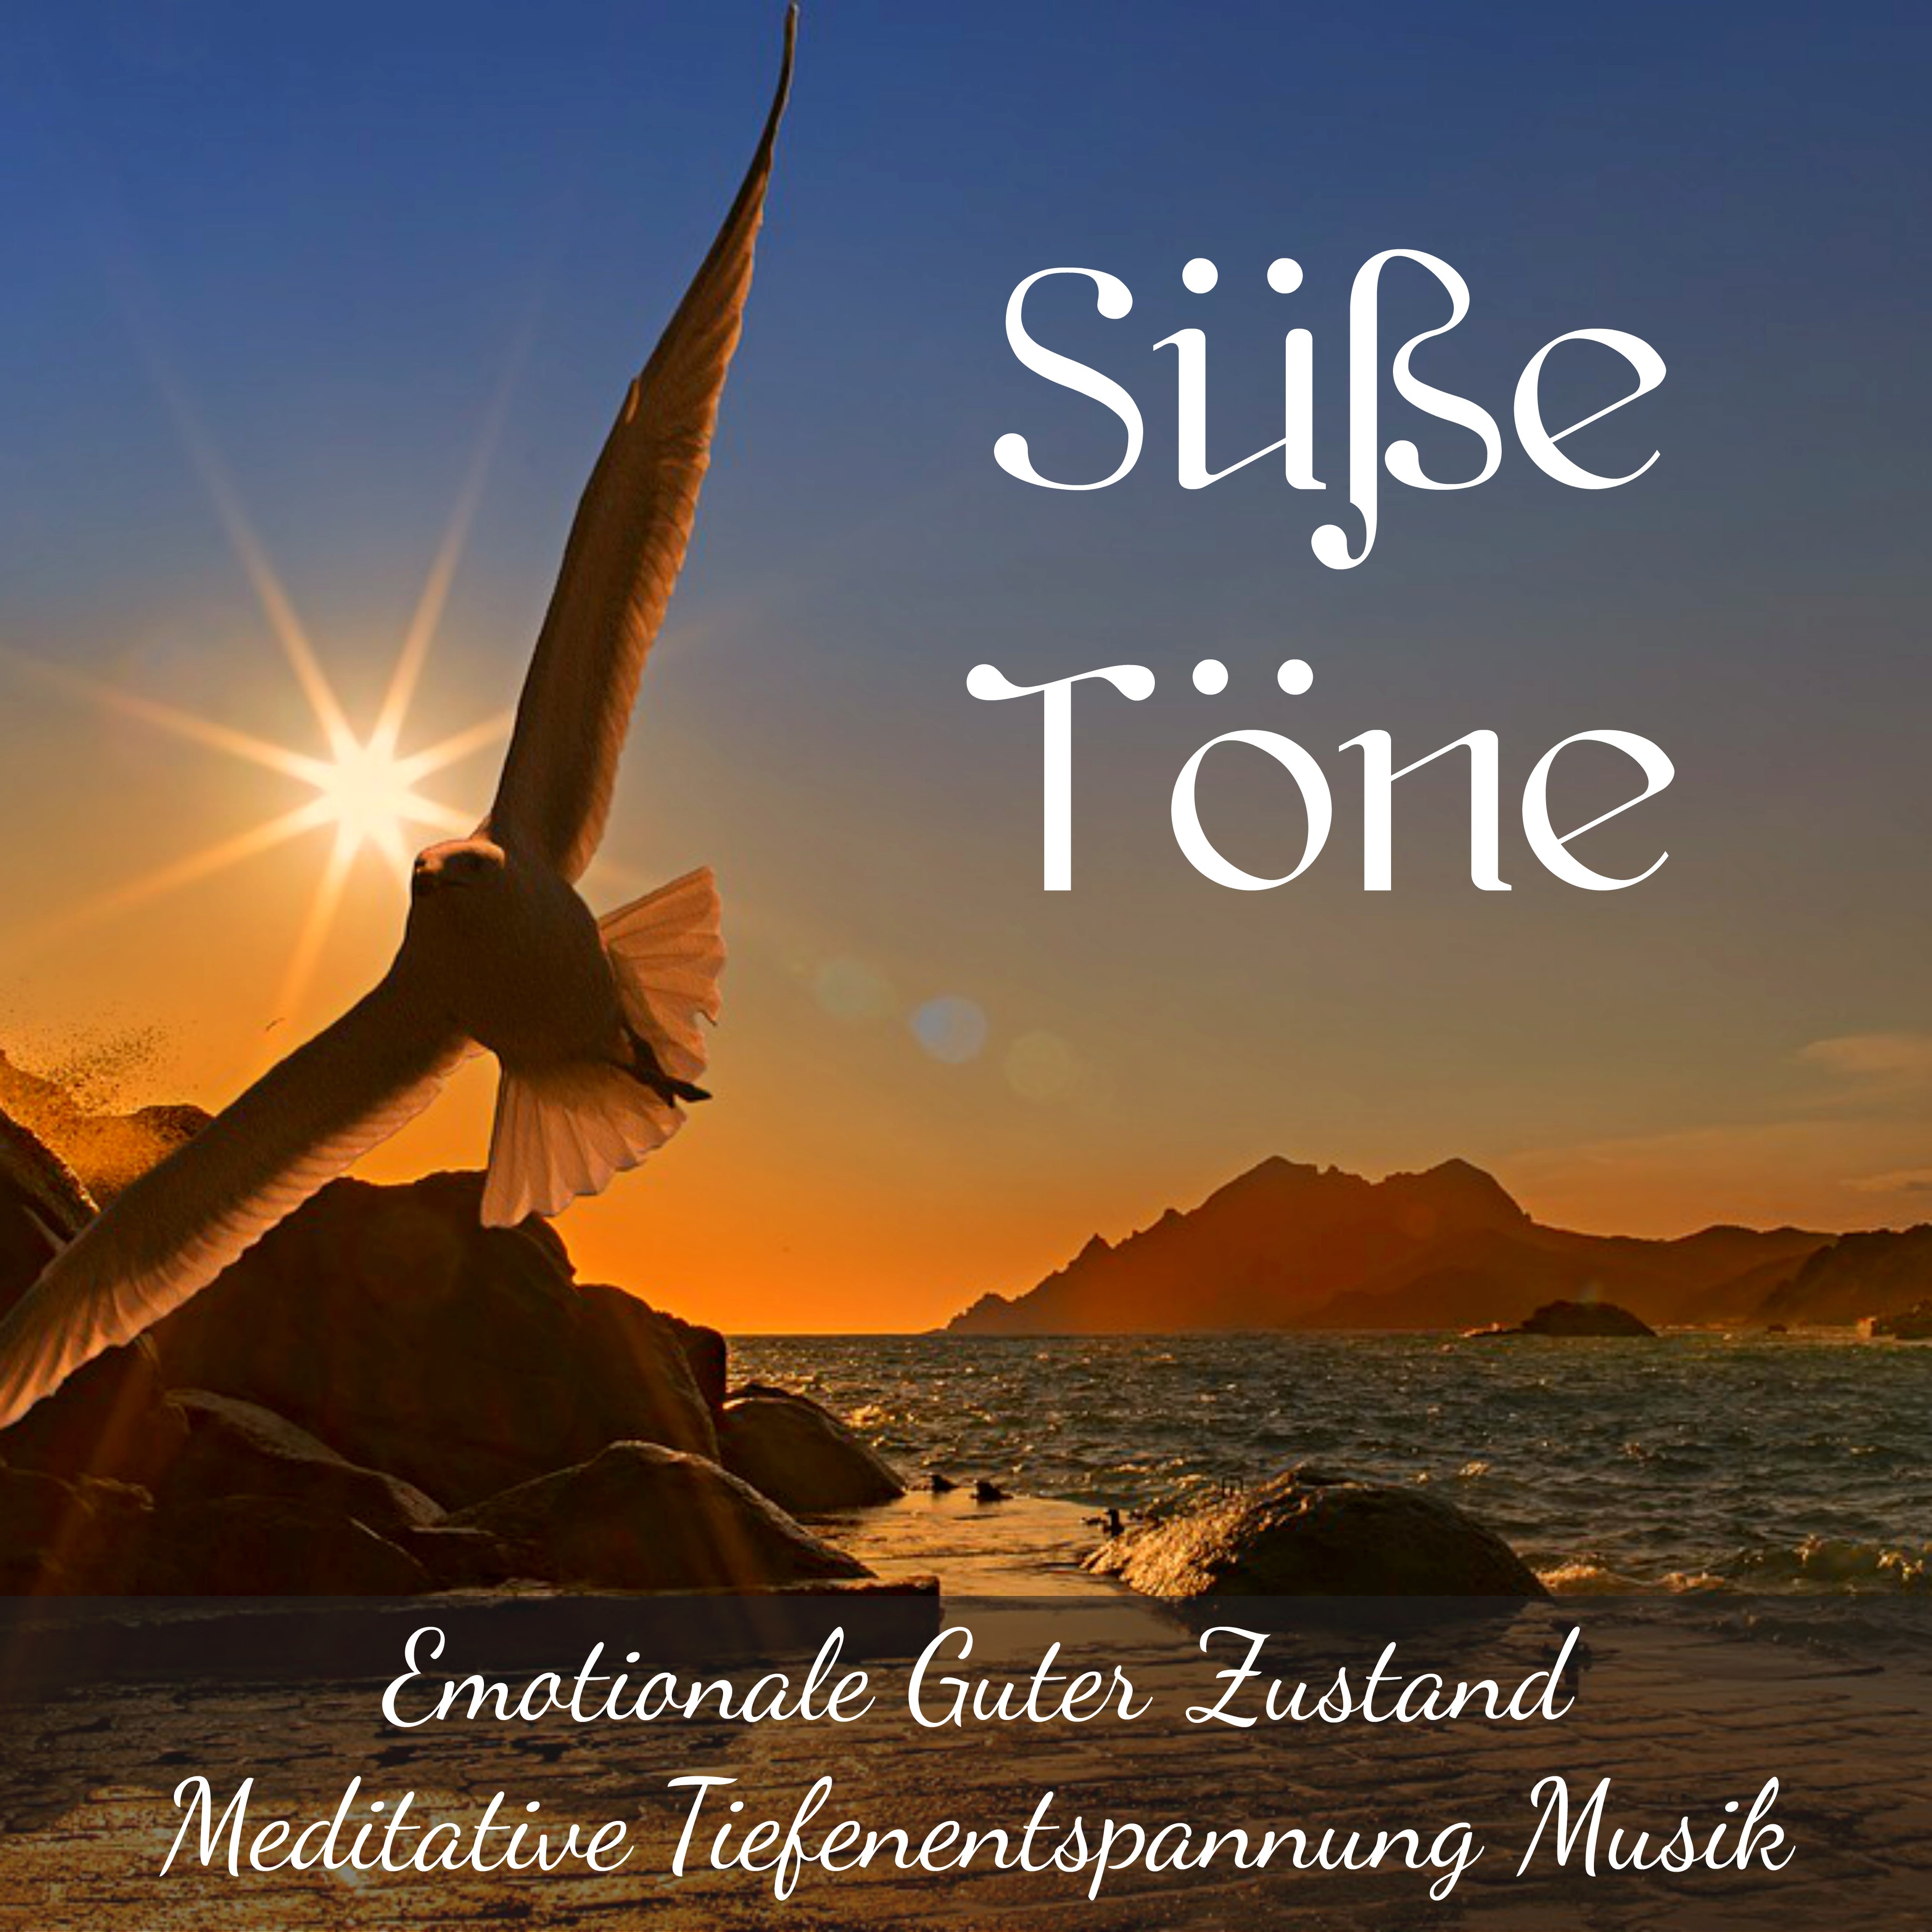 Süße Töne - Emotionale Guter Zustand Meditative Tiefenentspannung Musik mit Beruhigende New Age Instrumental Geräusche